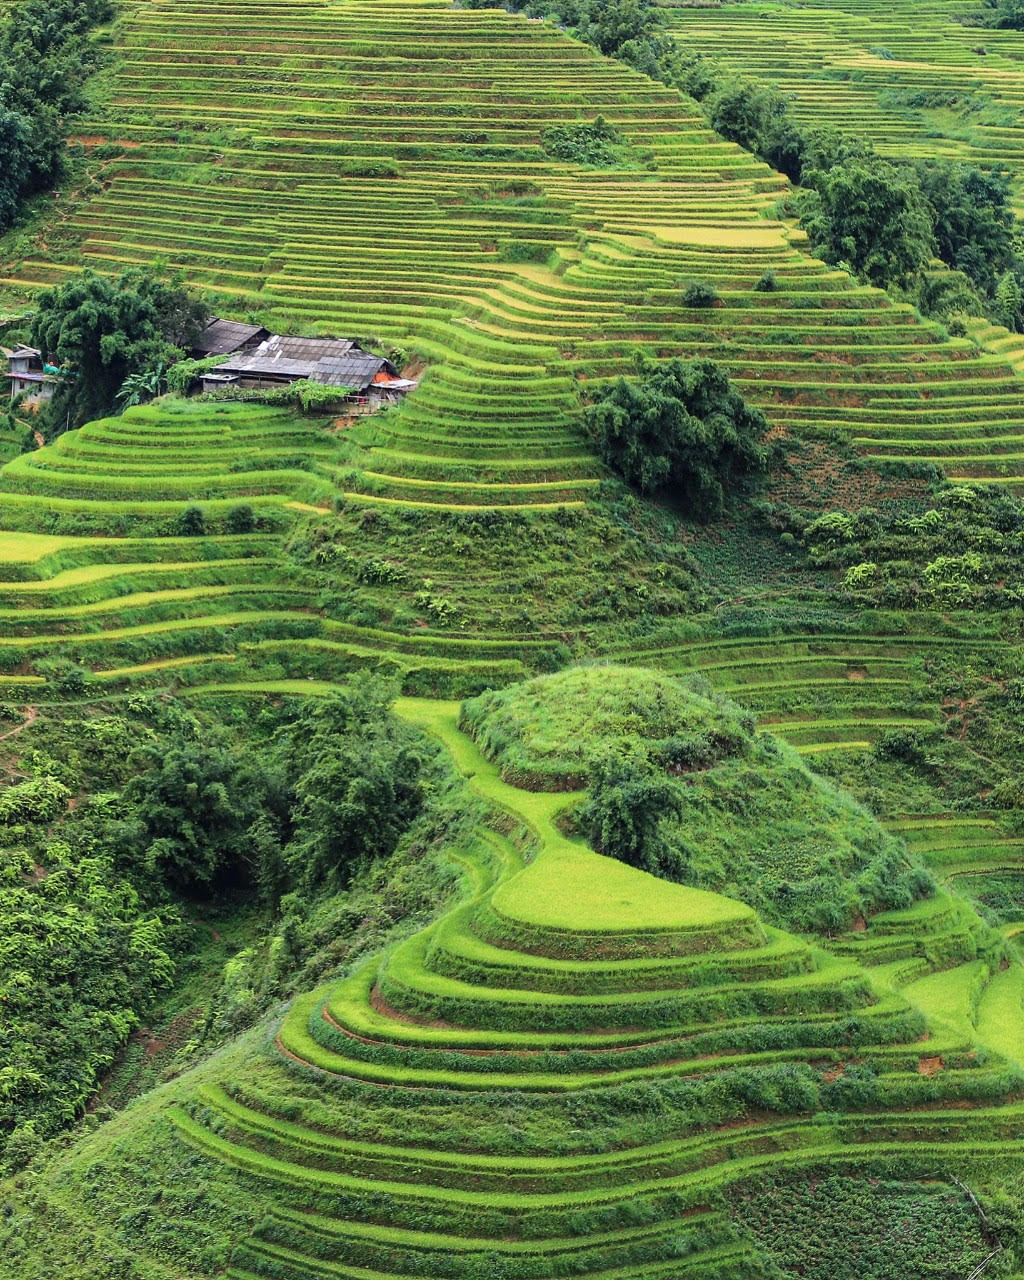 Los 8 mejores destinos para ver la temporada del arroz dorado en Vietnam